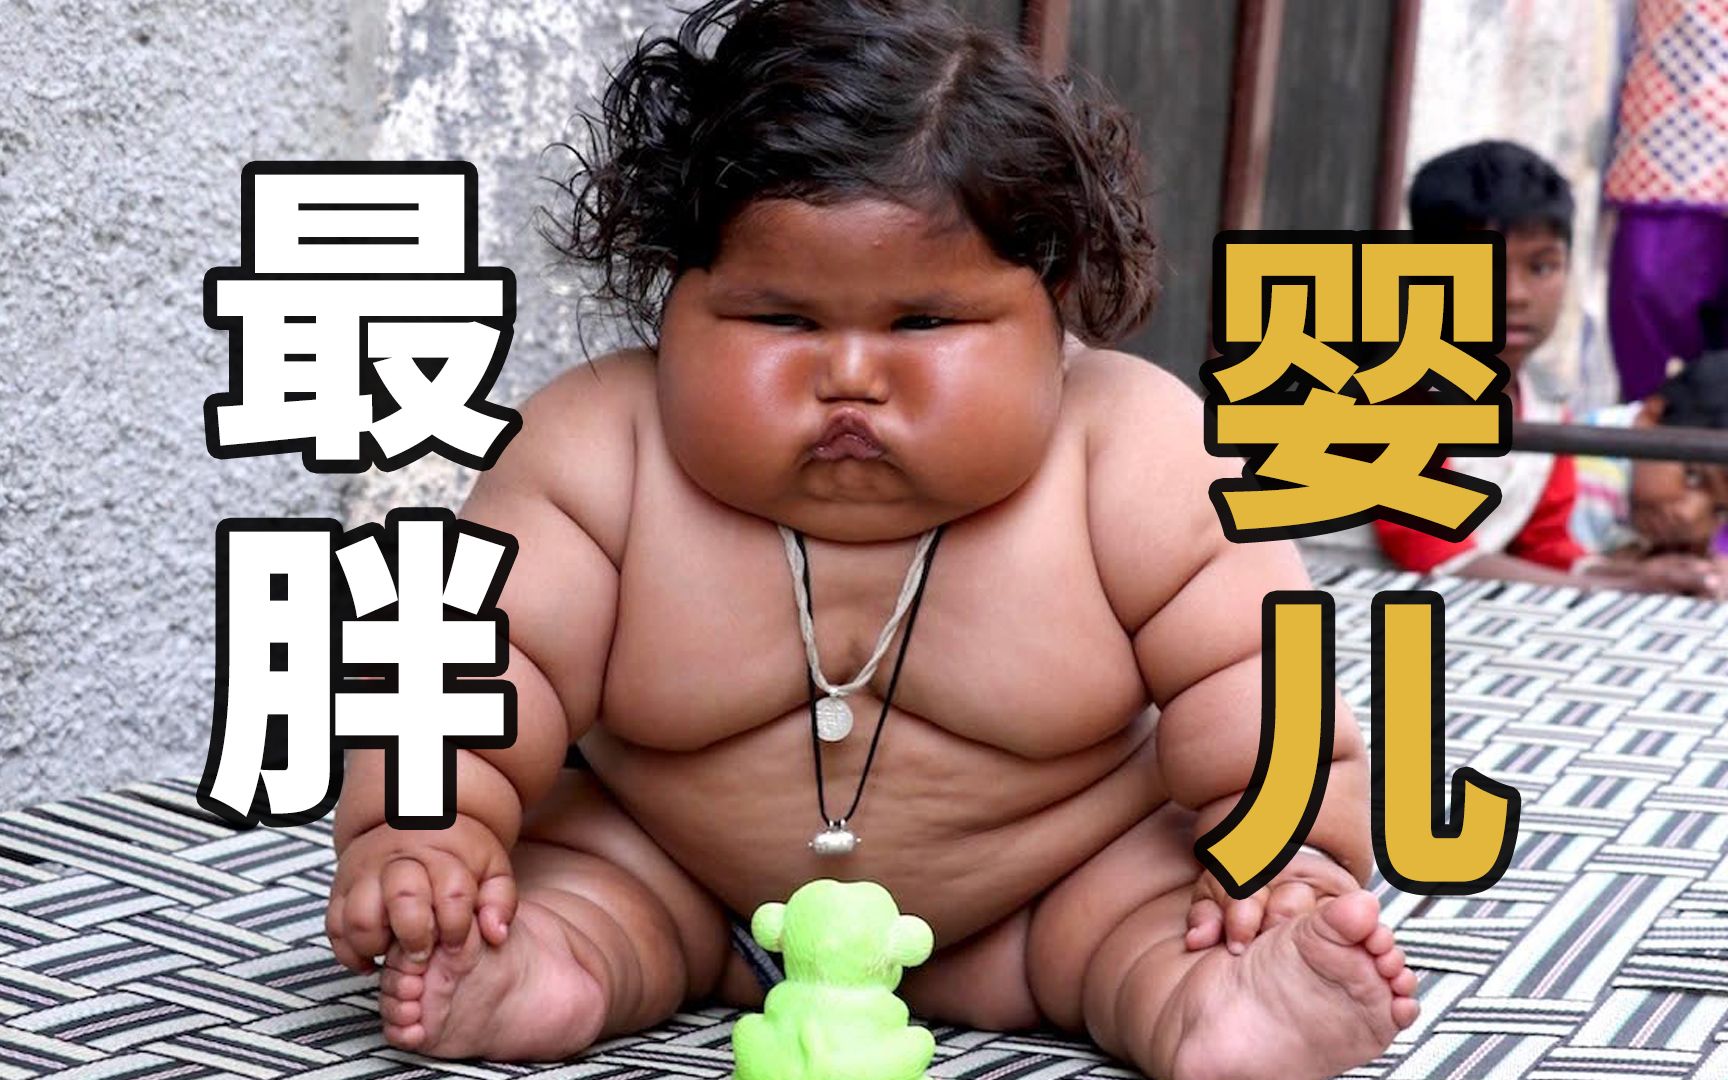 世界上最胖的婴儿